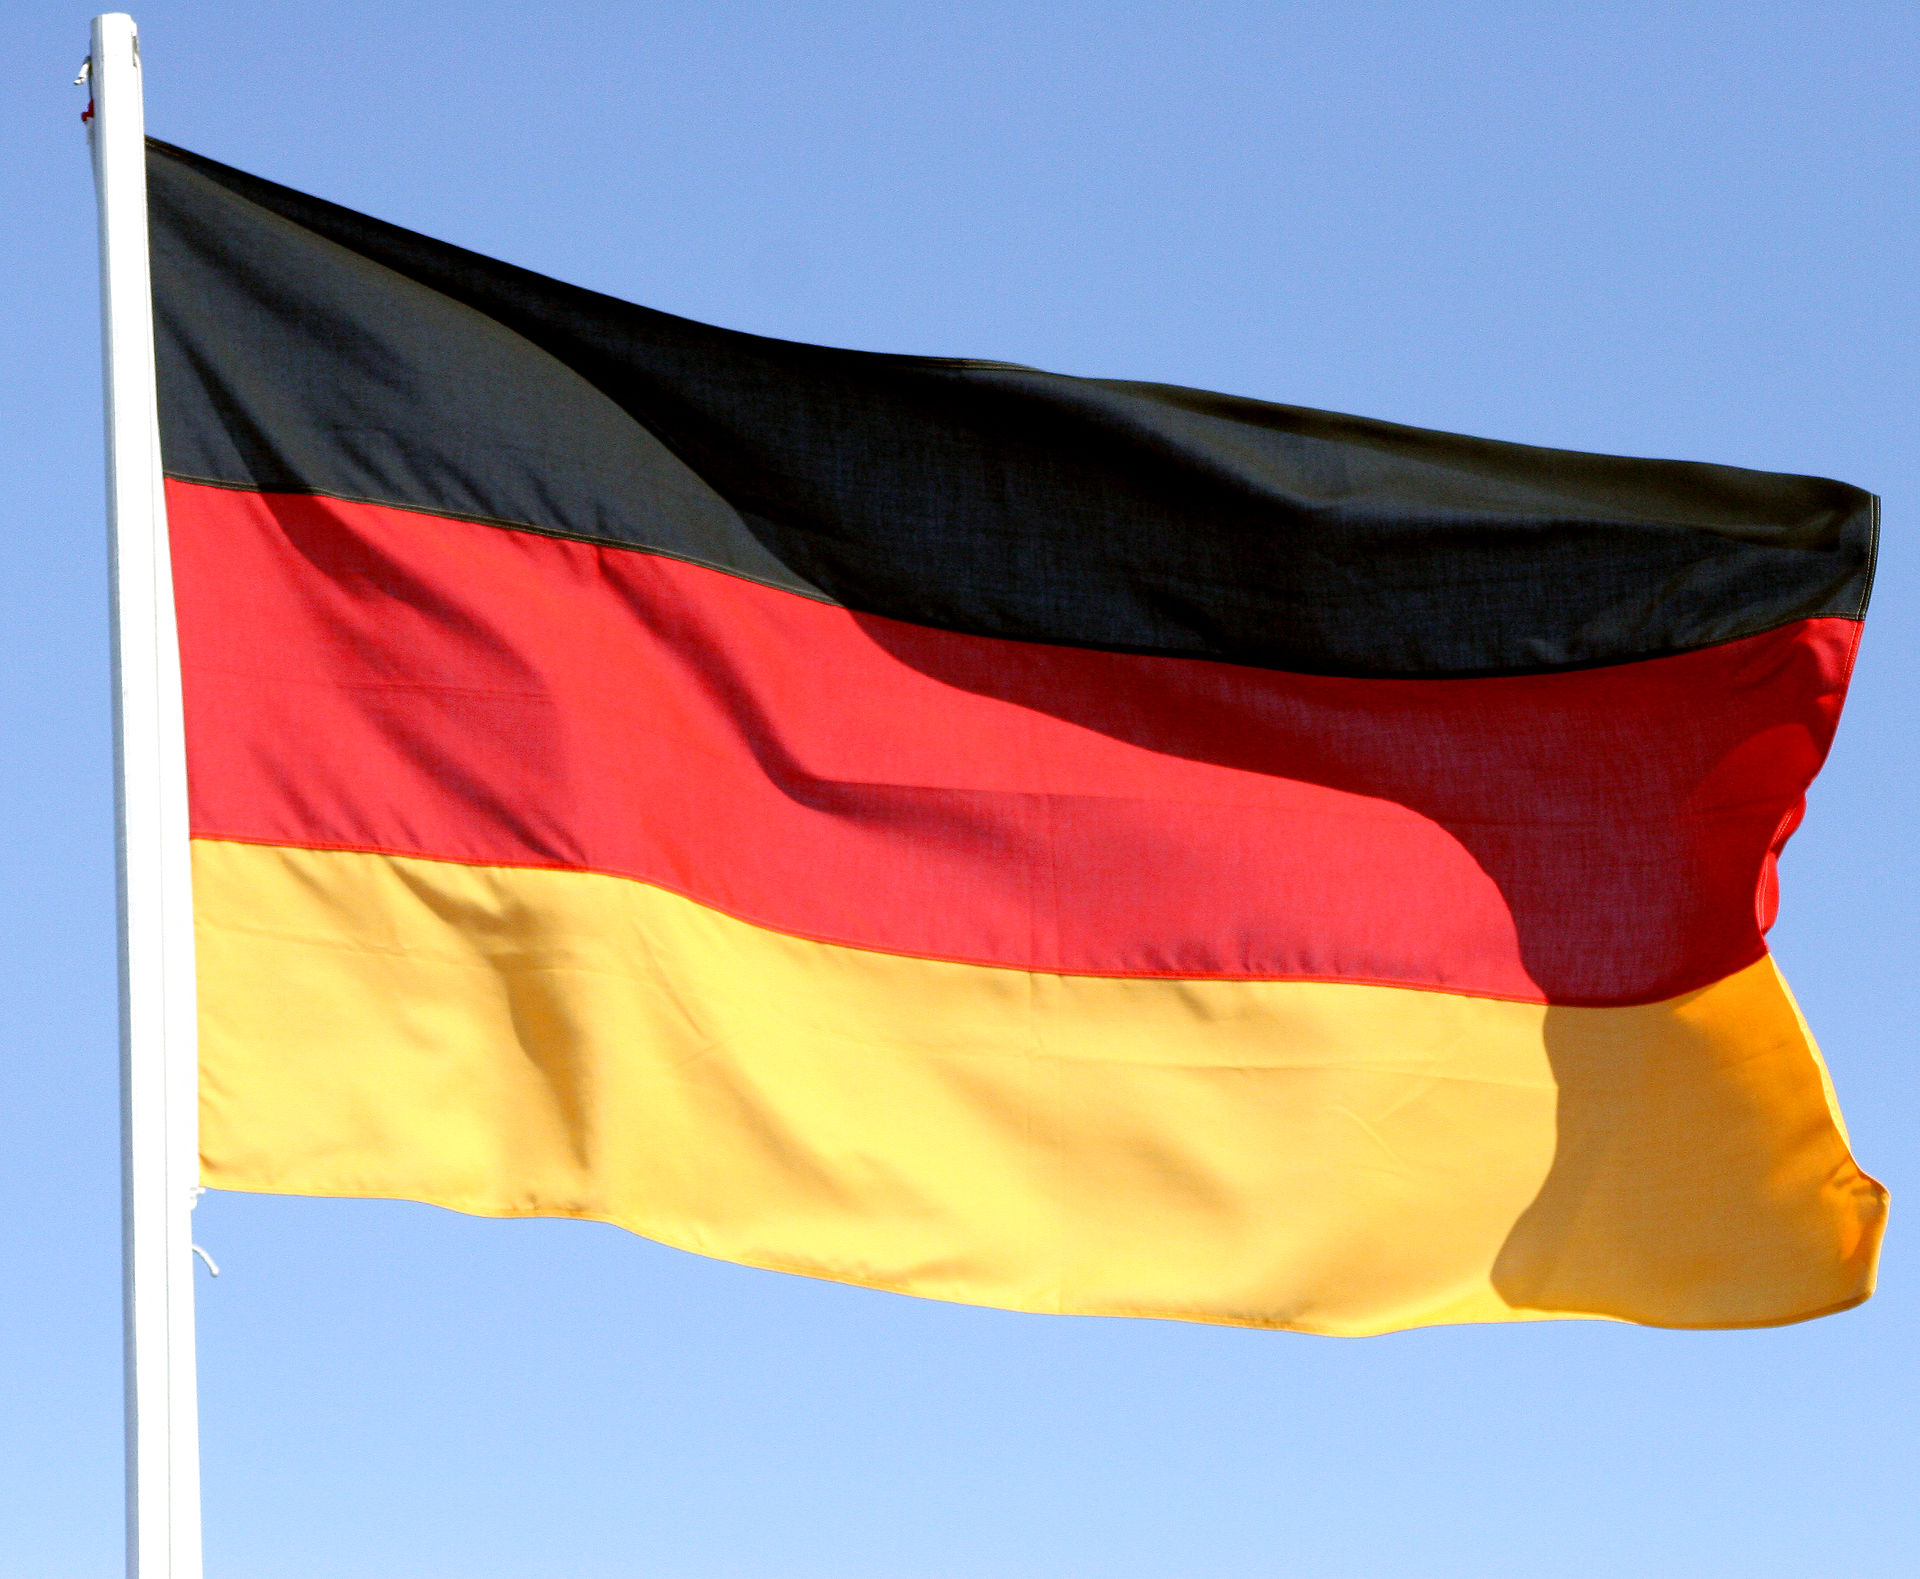 Dänemark: Deutsche Minderheit will ohne Erlaubnis deutsche Flagge